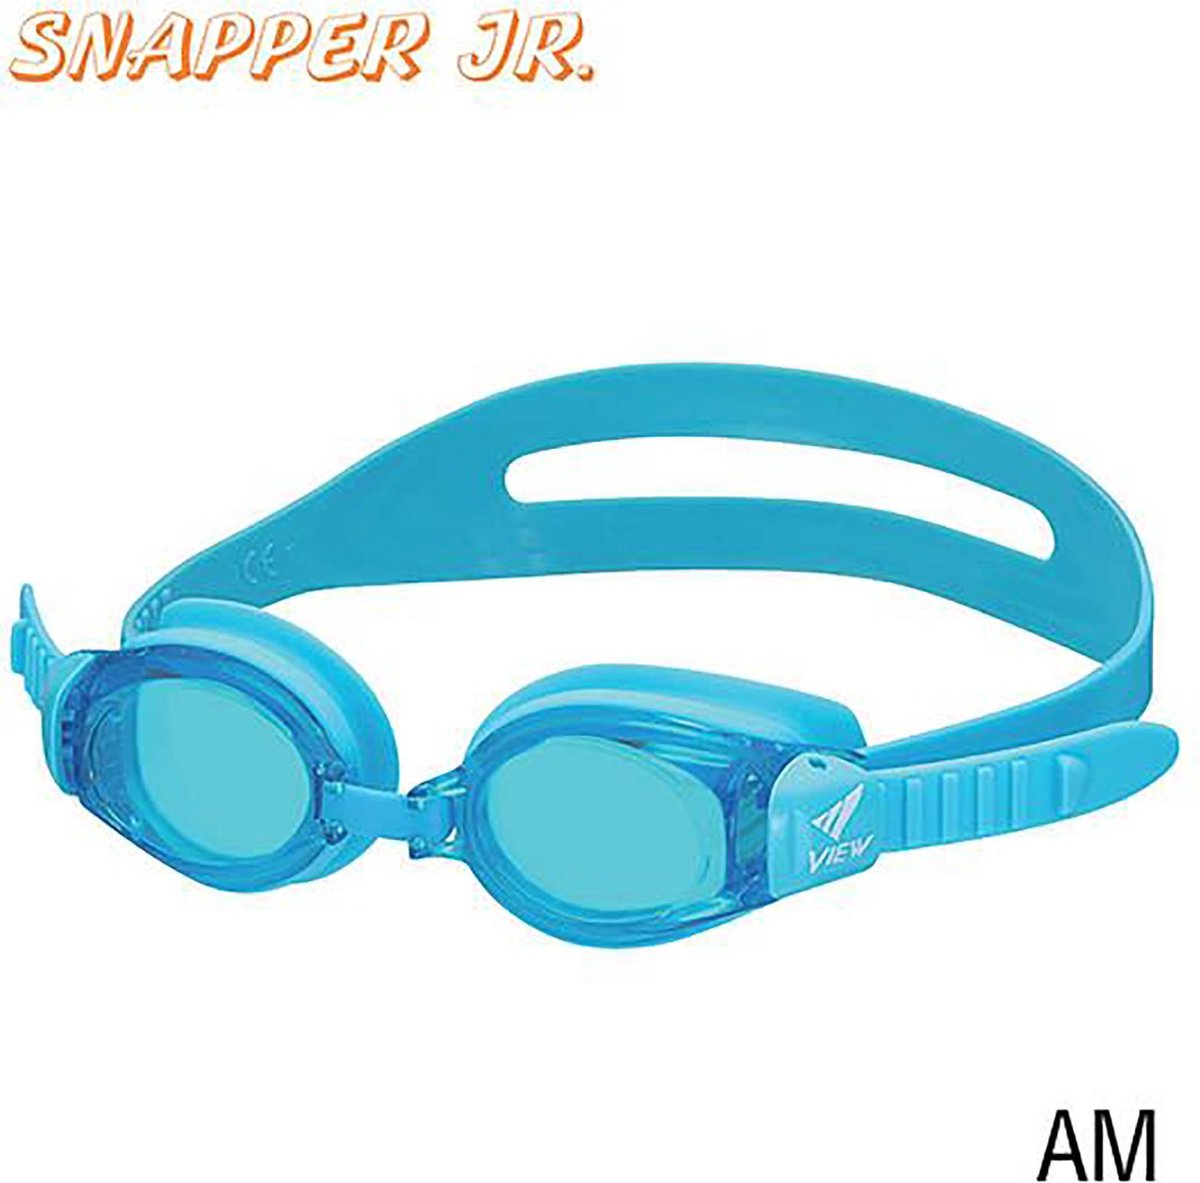 VIEW Snapper Jr zwembril voor kinderen van 4-9 jaar V-730JA-AM